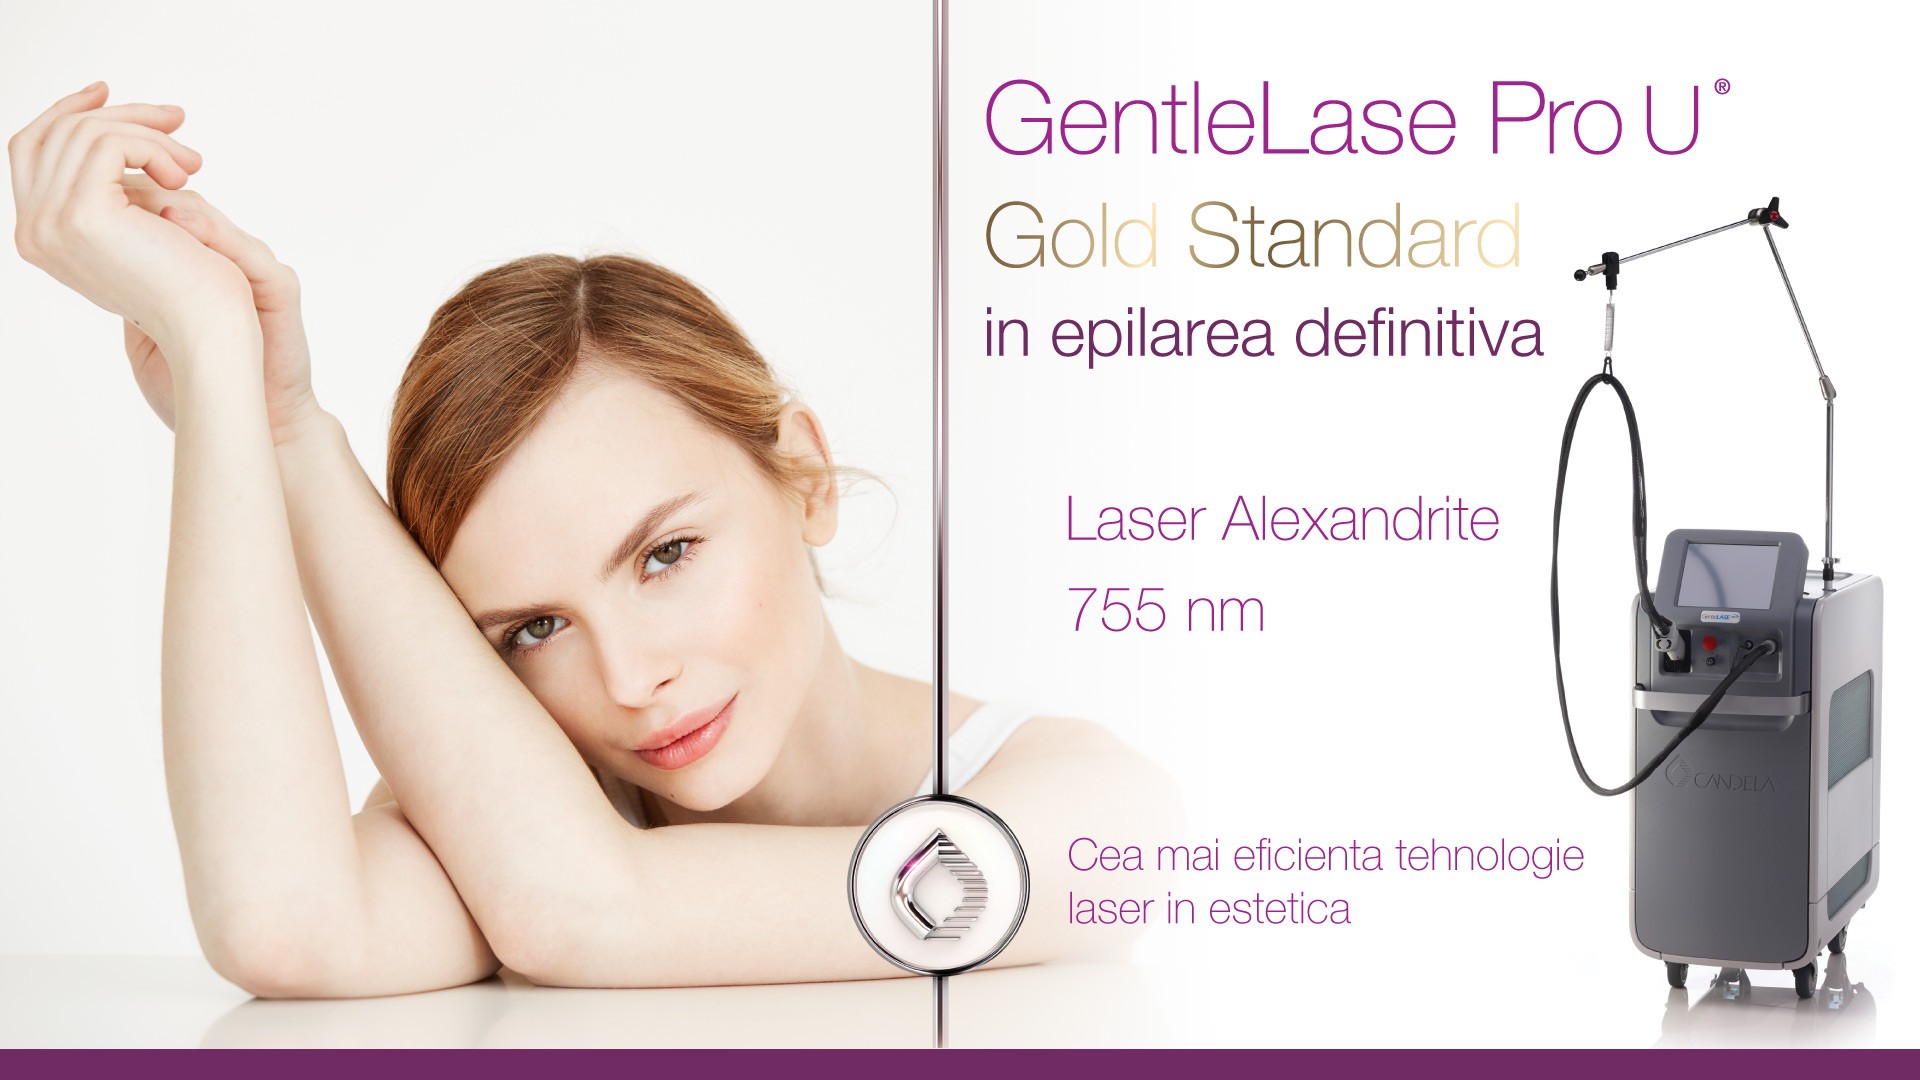 Aparat Profesional Laser Alexandrite GentleLase Pro